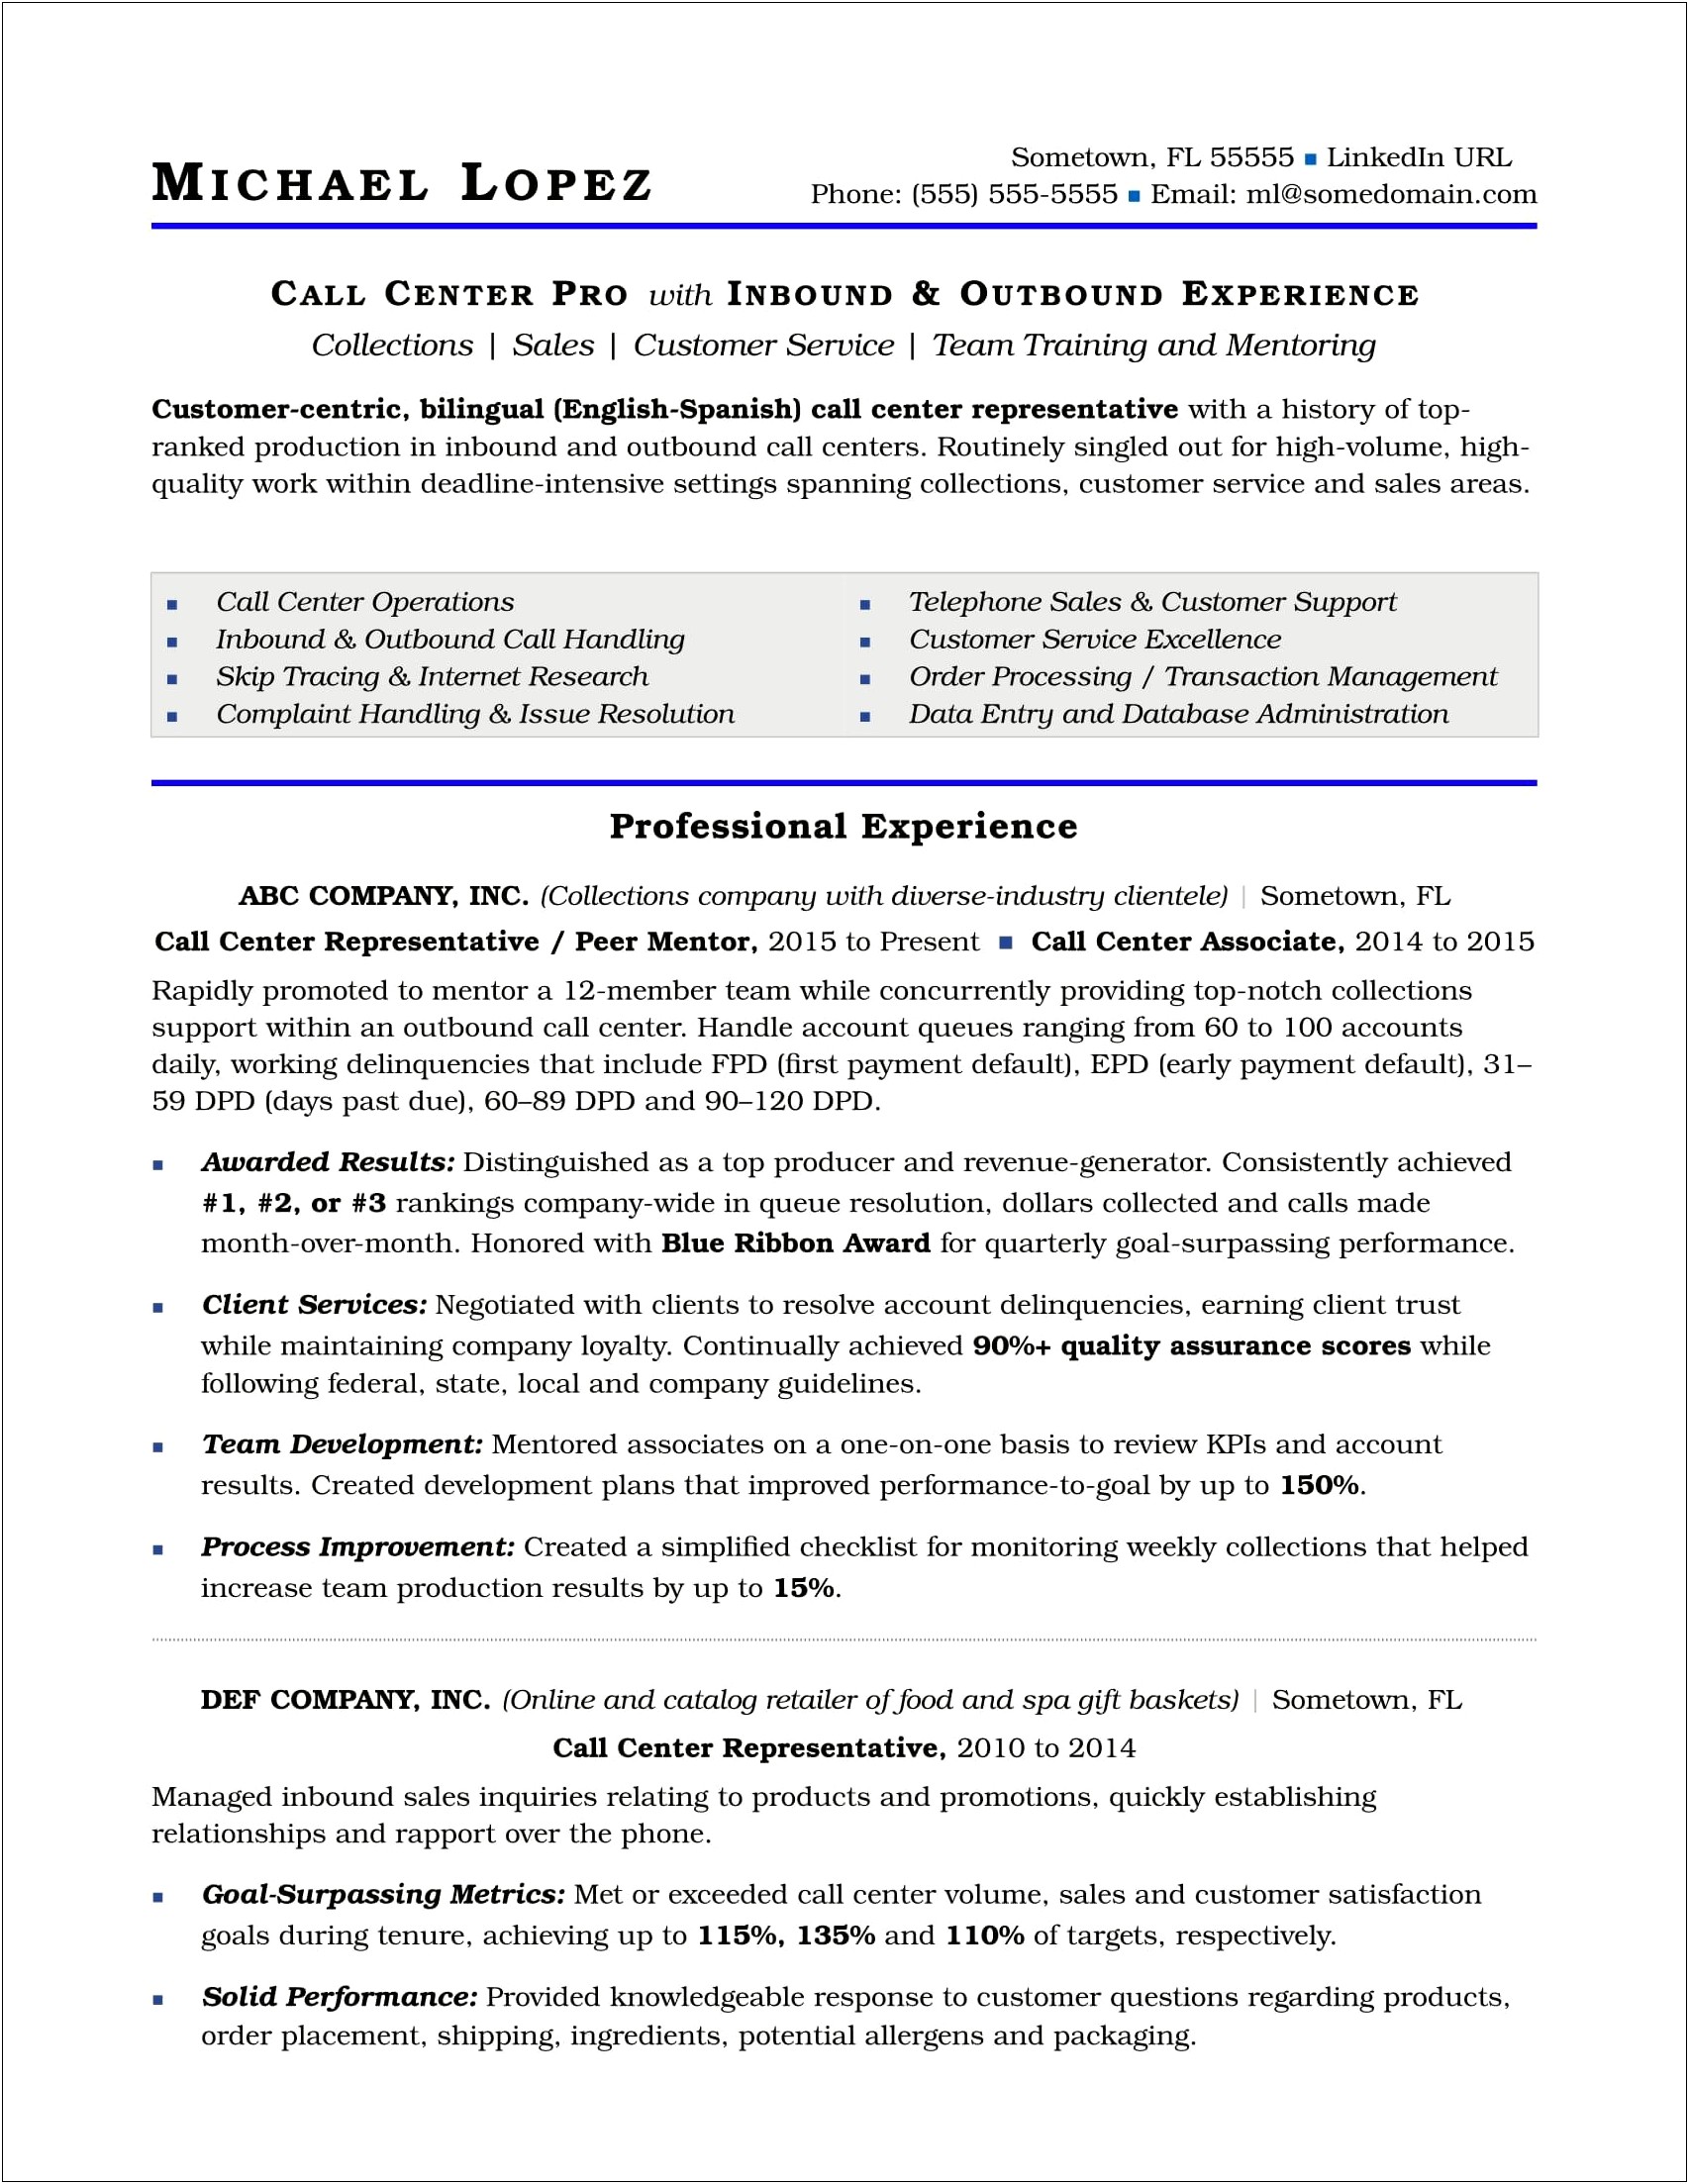 Resume Job Description For Call Center